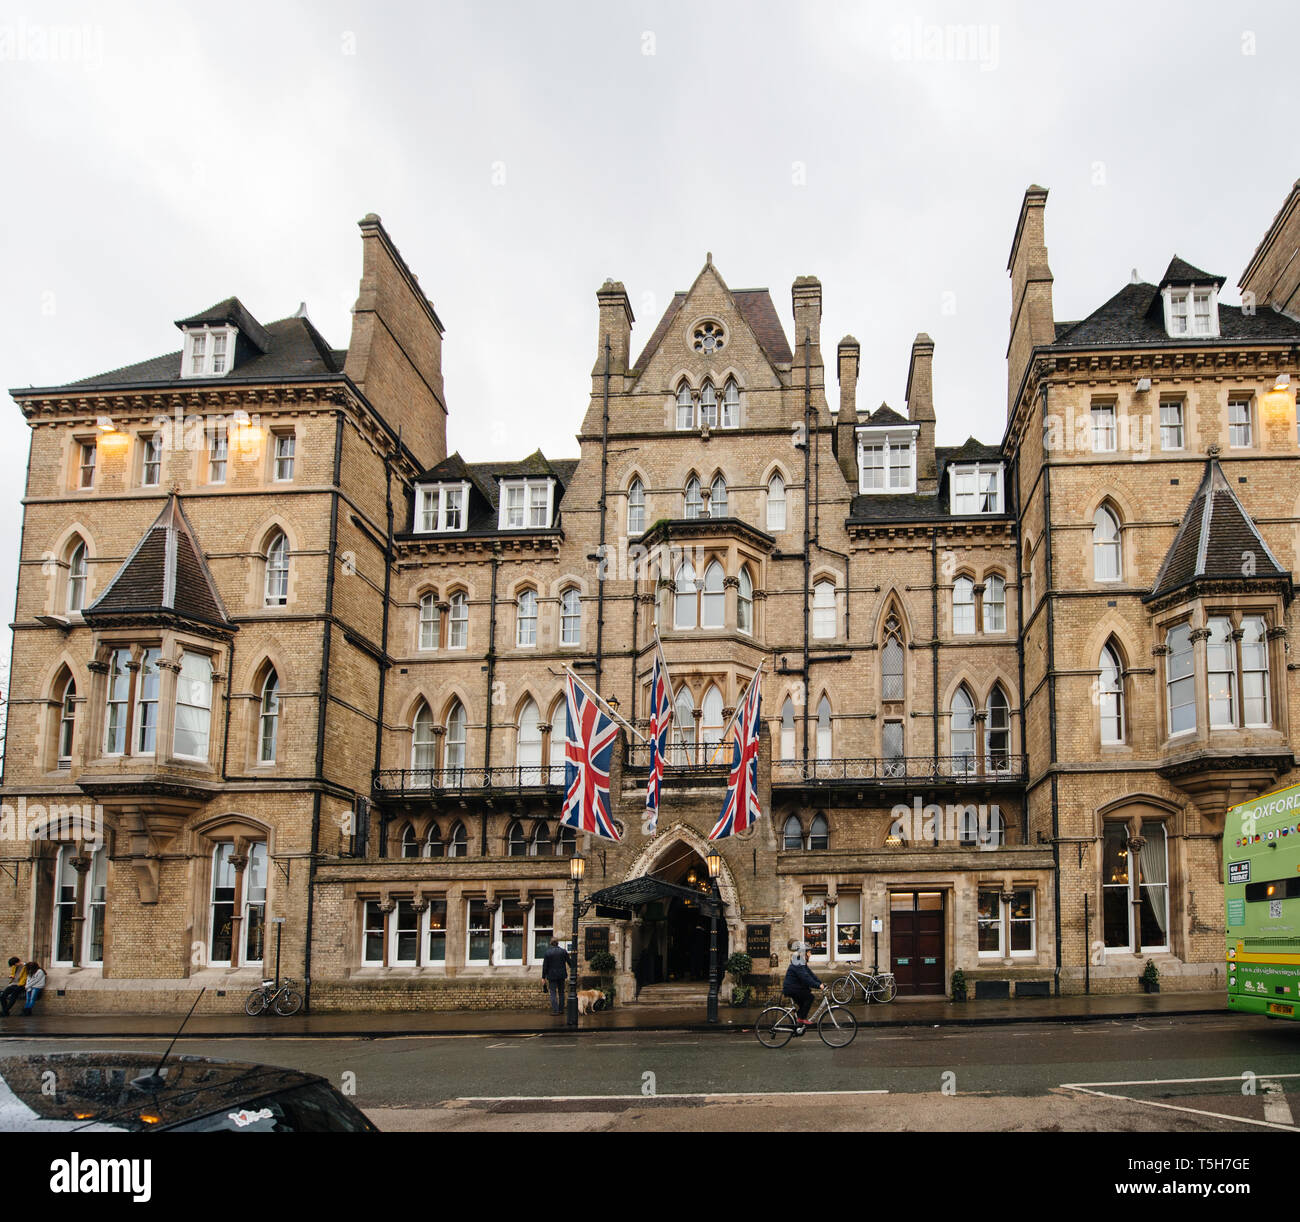 Oxford, Regno Unito - Mar 4, 2017: Macdonald Randolph Hotel nel centro di Oxford Beaumont Street, all'angolo con il Magdalen Street, di fronte al museo Ashmolean Museum e vicino a Oxford Playhouse. L'architettura dell'hotel vittoriano è in stile gotico. Foto Stock